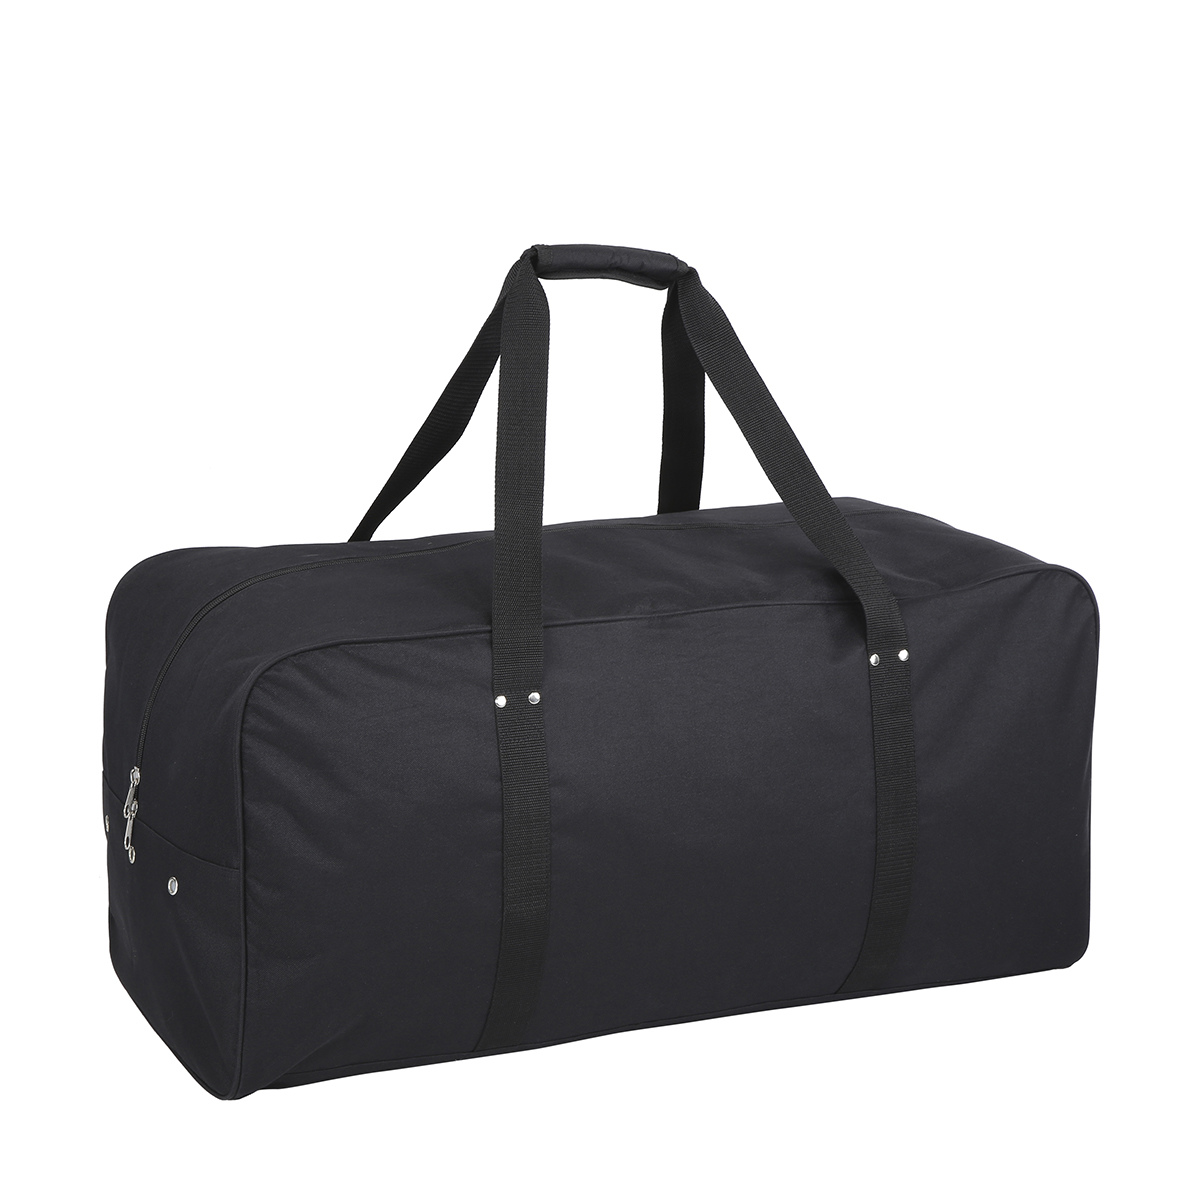 Large Duffel Bag - Black | Kmart